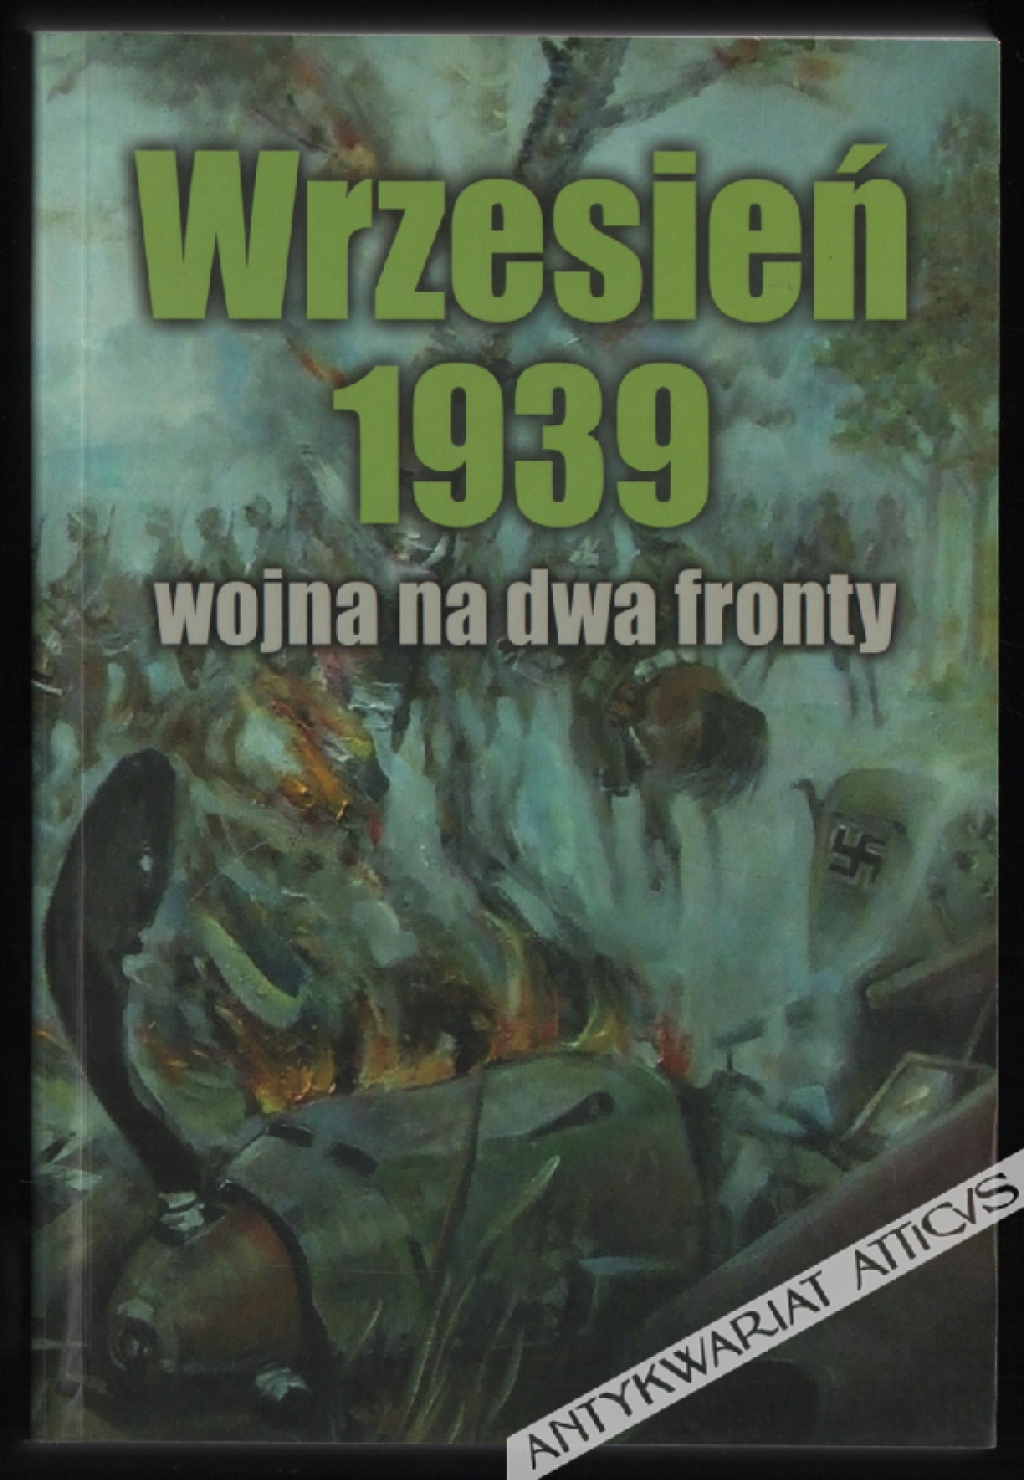 Wrzesień 1939 wojna na dwa fronty [zbiór artykułów]